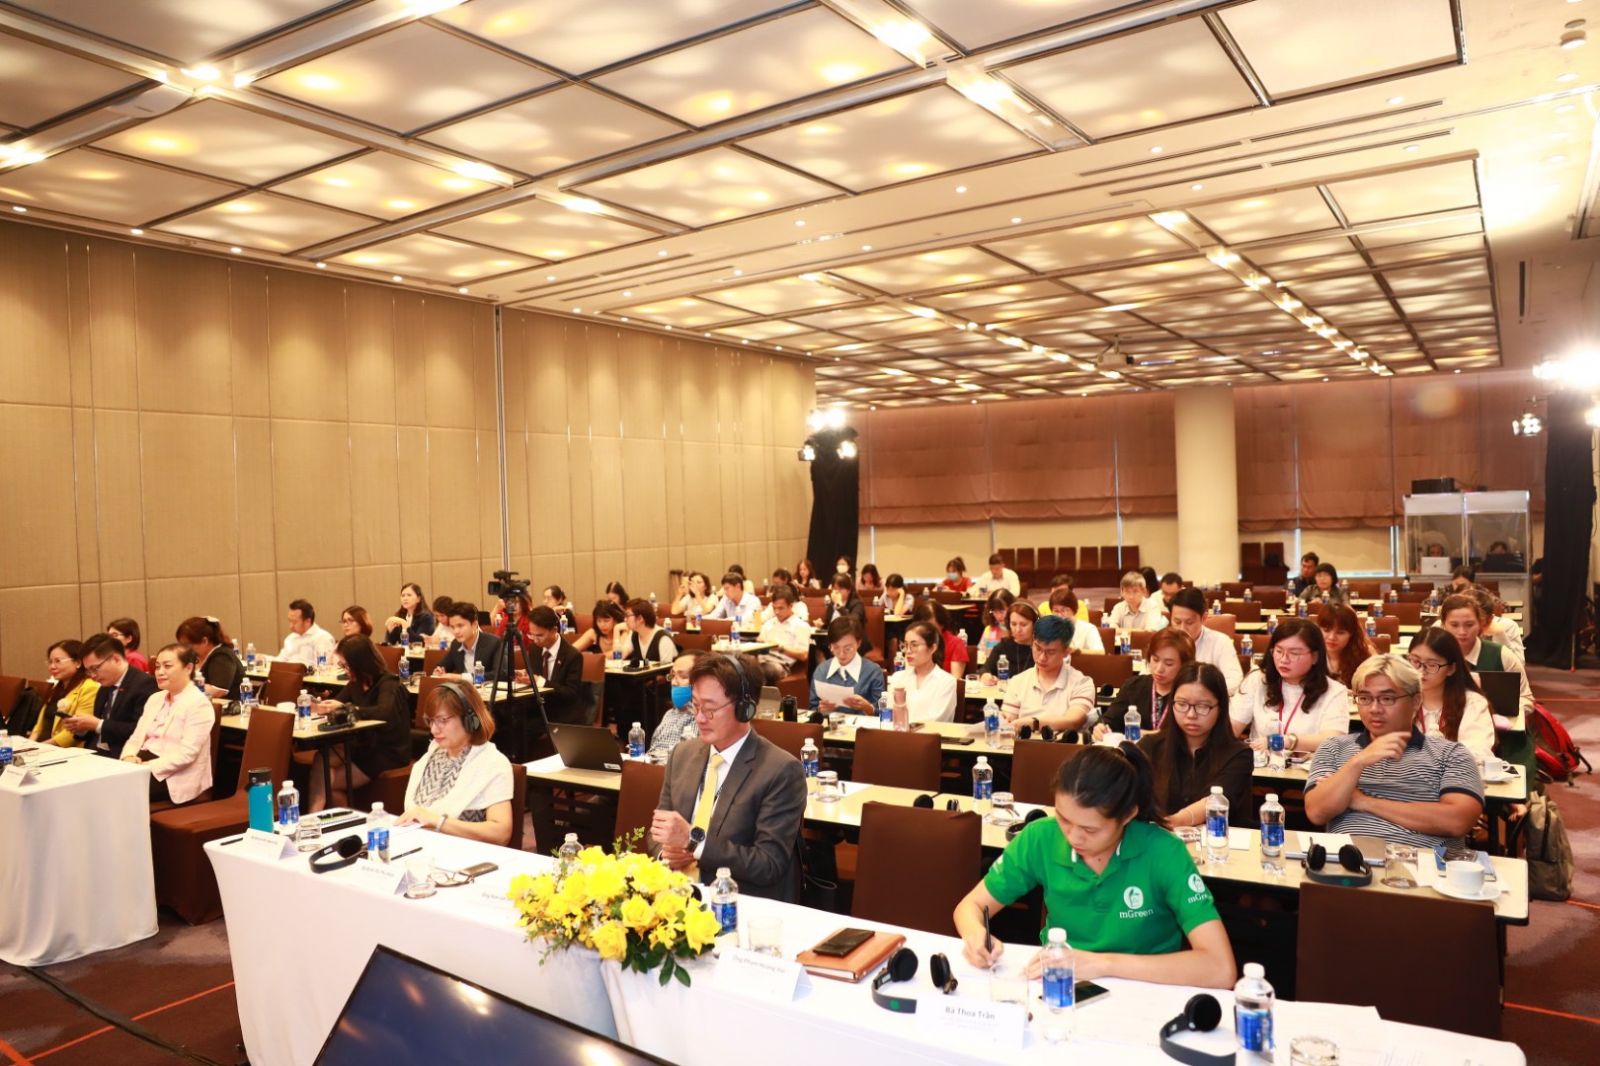 Hội thảo thu hút được sự quan tâm của đông đảo doanh nghiệp trong nước và quốc tế.